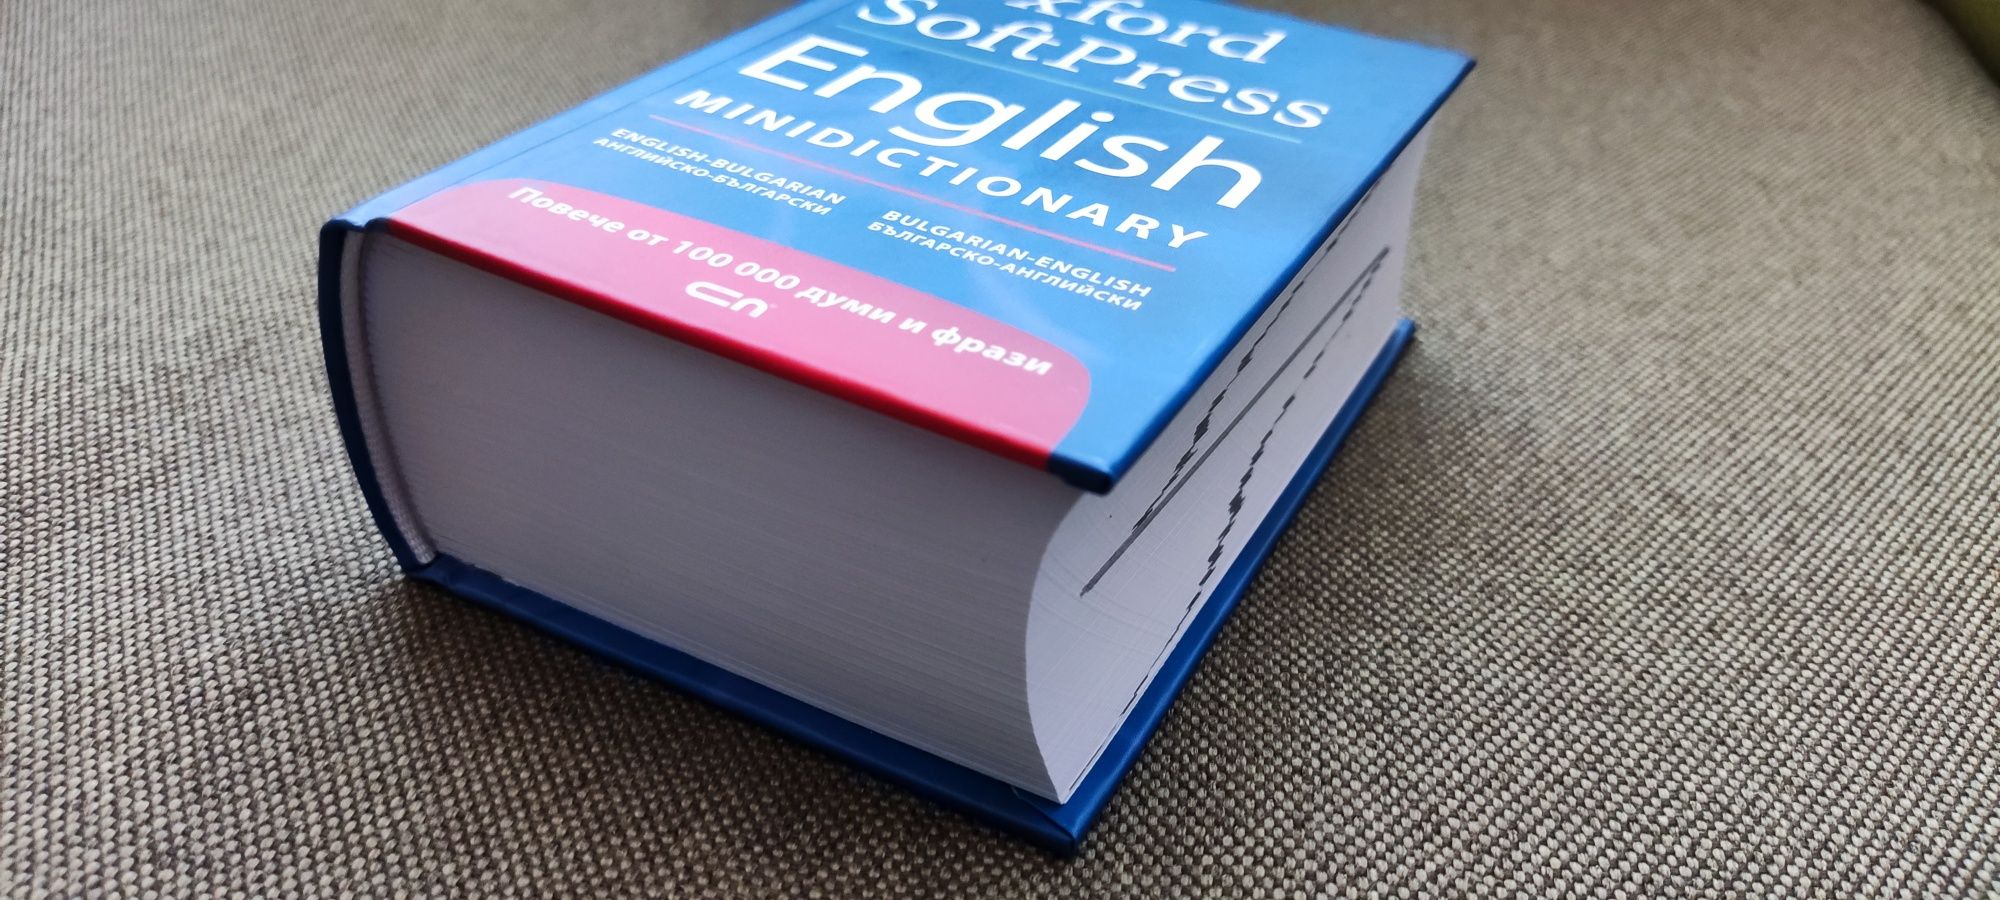 Речник английско-български българо-английски.